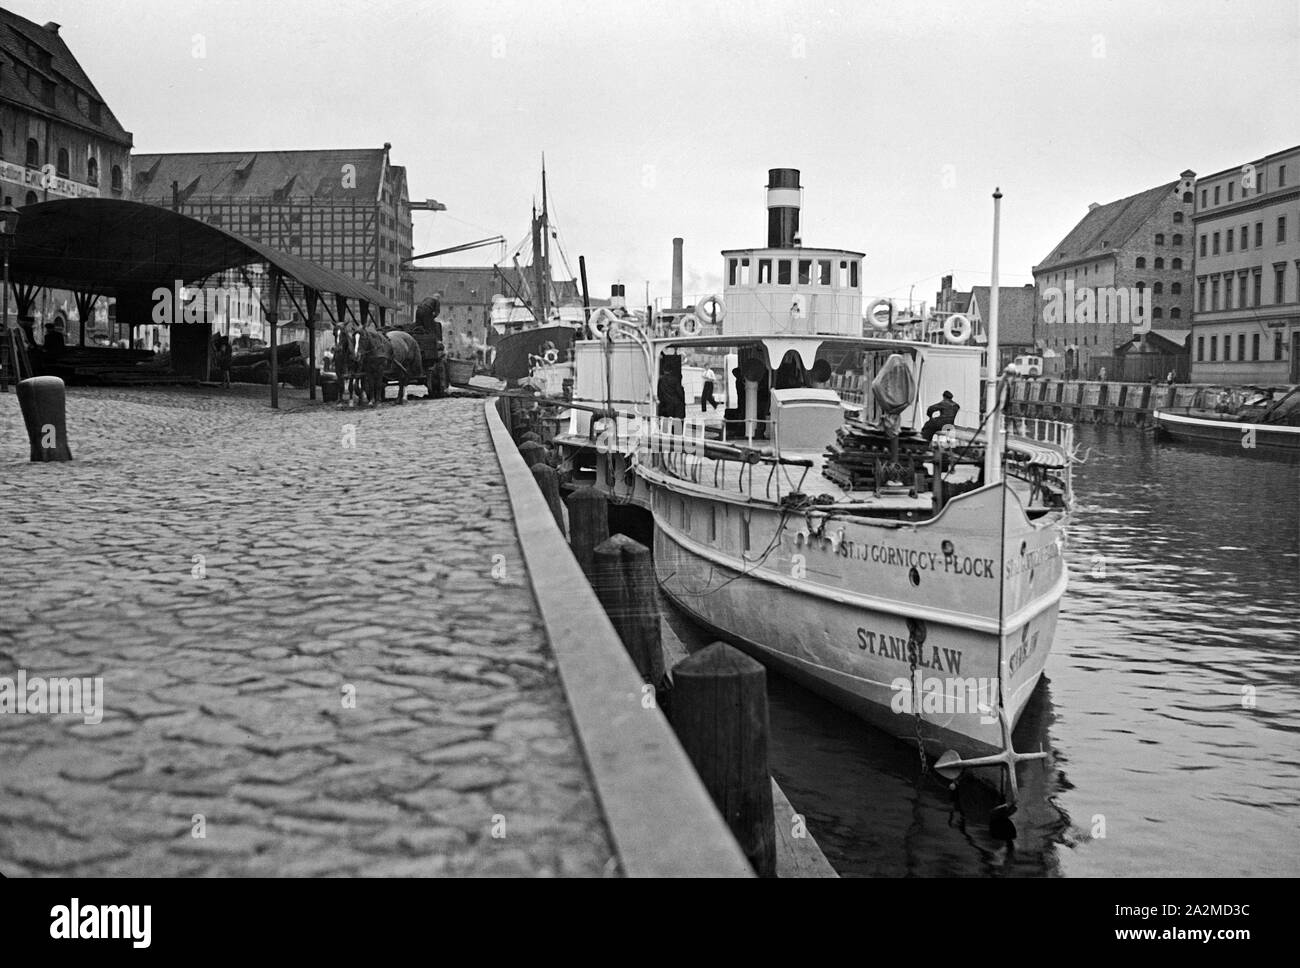 Ist das Schiff tanislaw'aus Plock hat am Kai im Hafen von Danzig angelegt, Deutschland 1930er Jahre. Die schiffsführung tanislaw" von der Stadt Plock Verankerung am Kai der Danziger Hafen, Deutschland 1930. Stockfoto